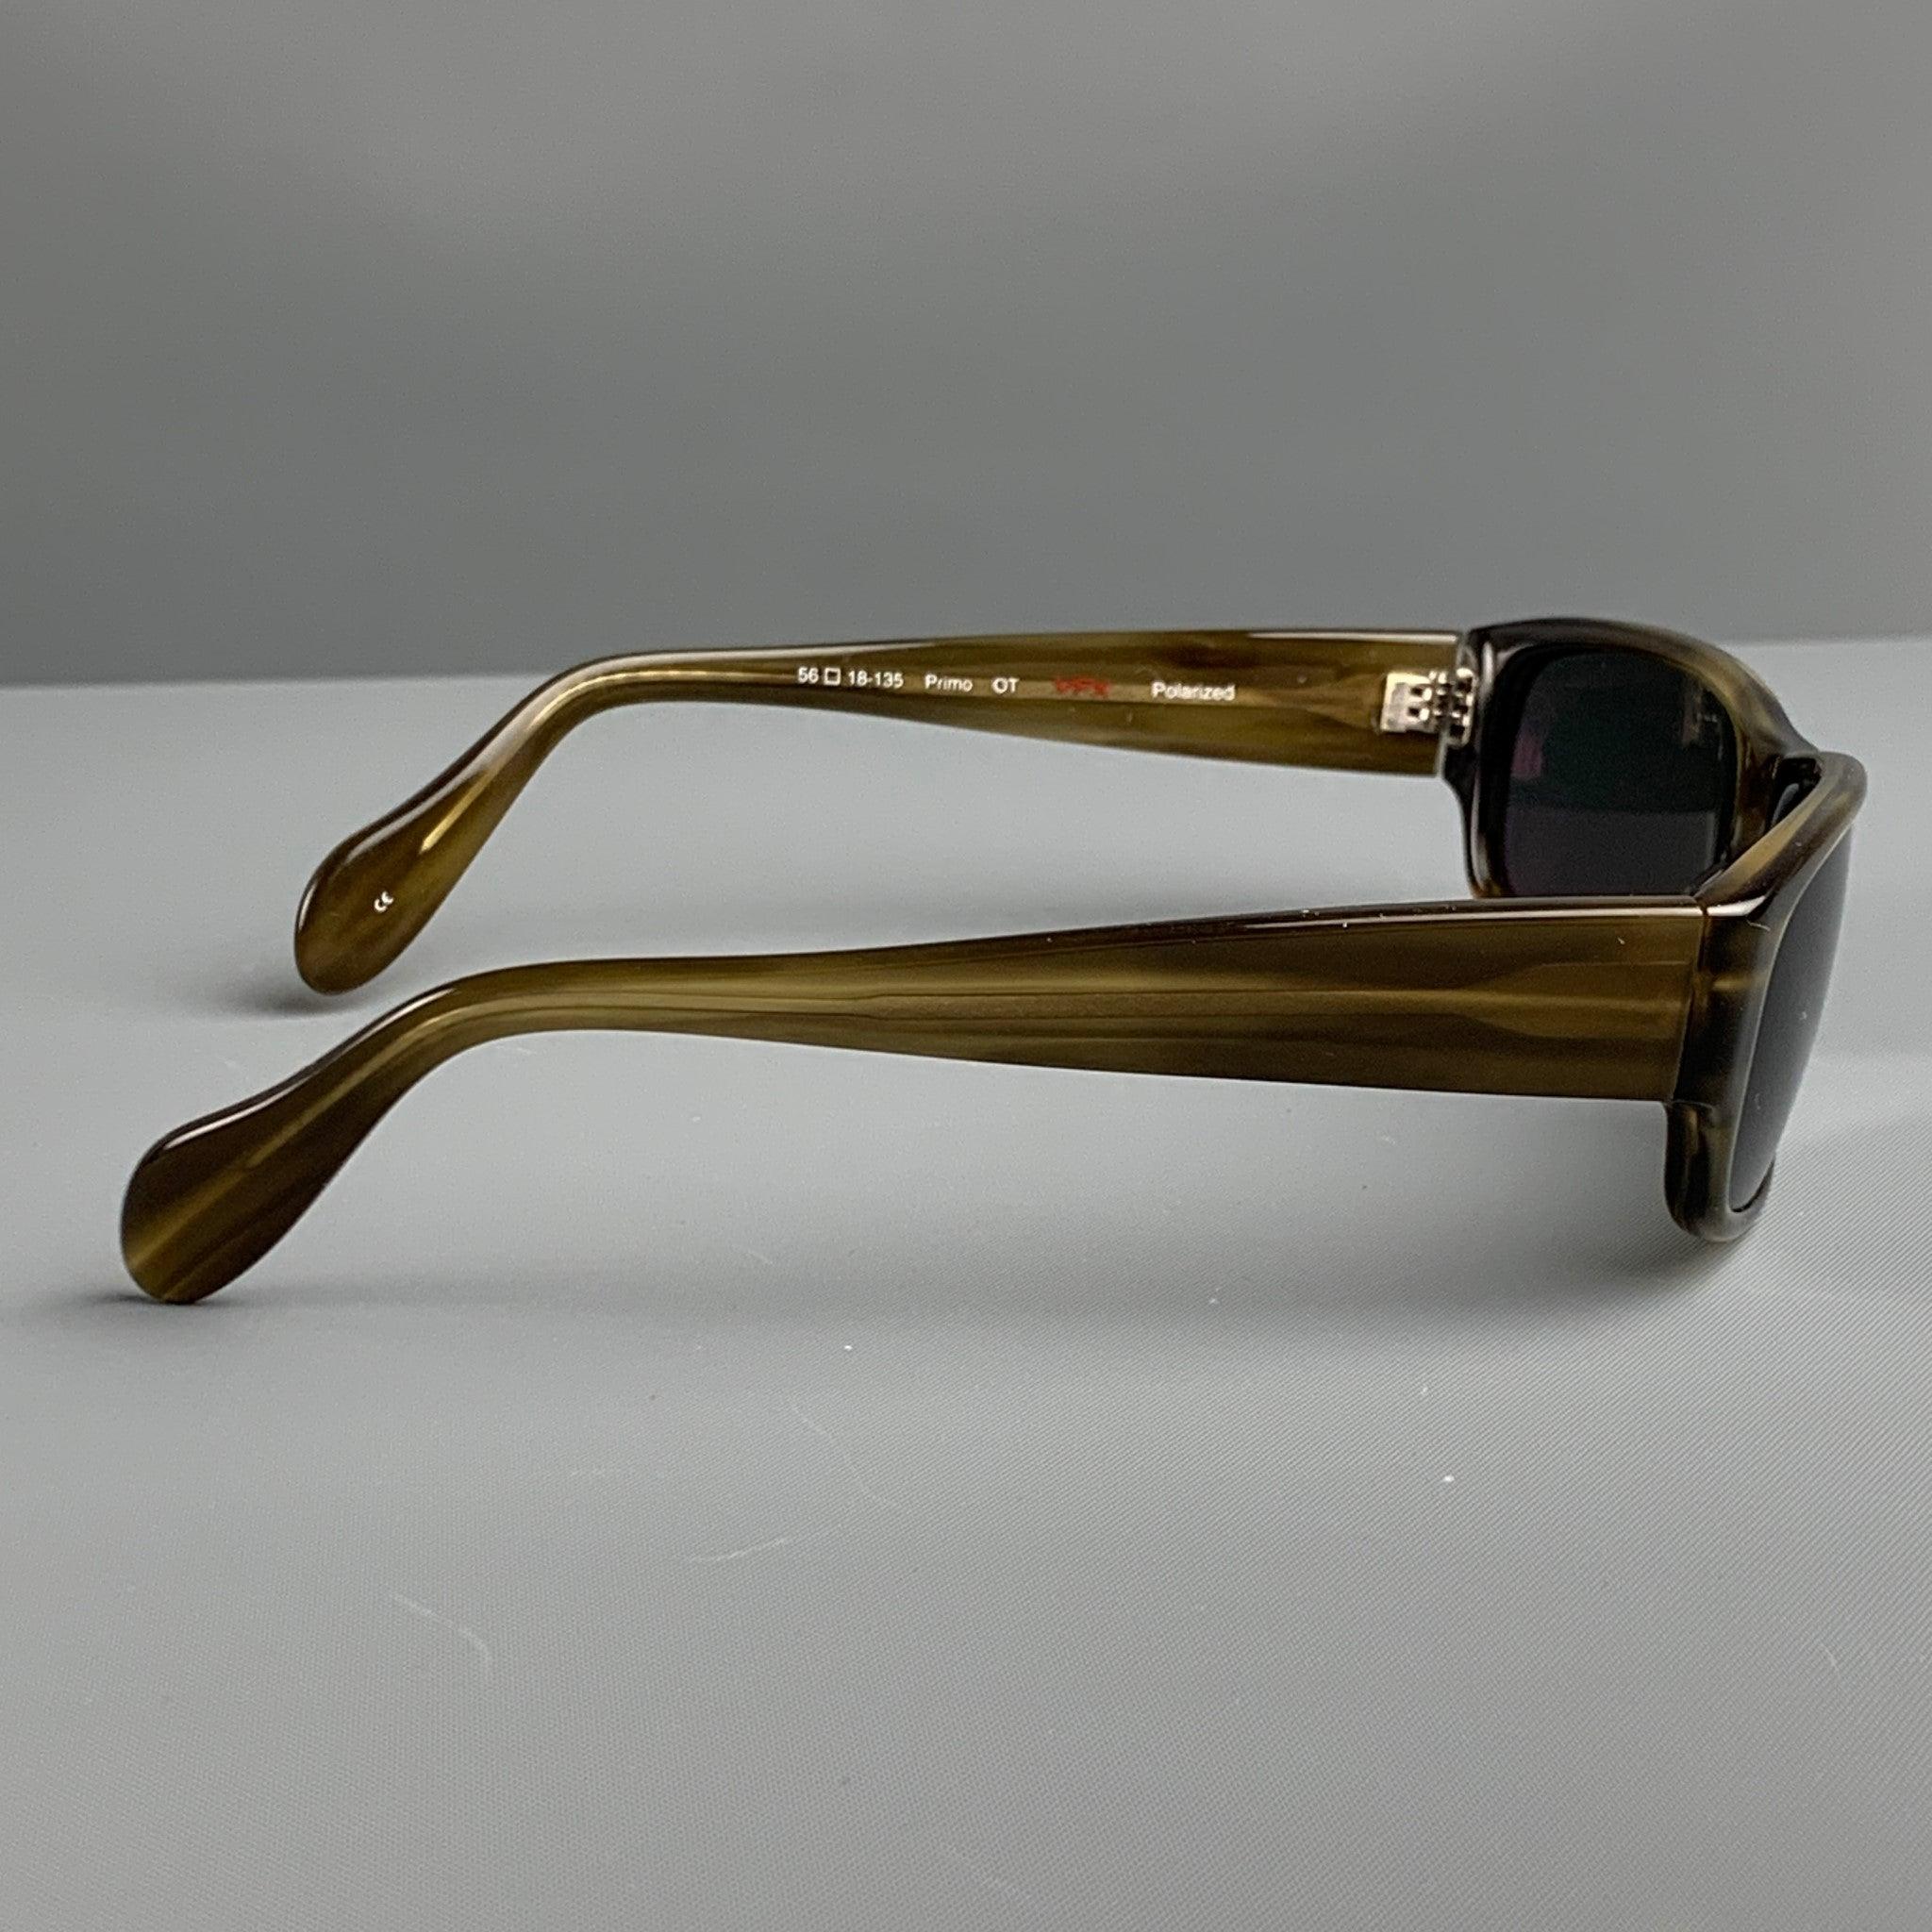 Die Sonnenbrille von OLIVER PEOPLES besteht aus braunem Acetat und hat getönte, polarisierte Gläser. Made in Japan. sehr guter gebrauchter Zustand. 

Markiert:   56 18-135 

Abmessungen: 
  Länge: 15 cm, Höhe: 4 cm. 
  
  
 
Referenz: